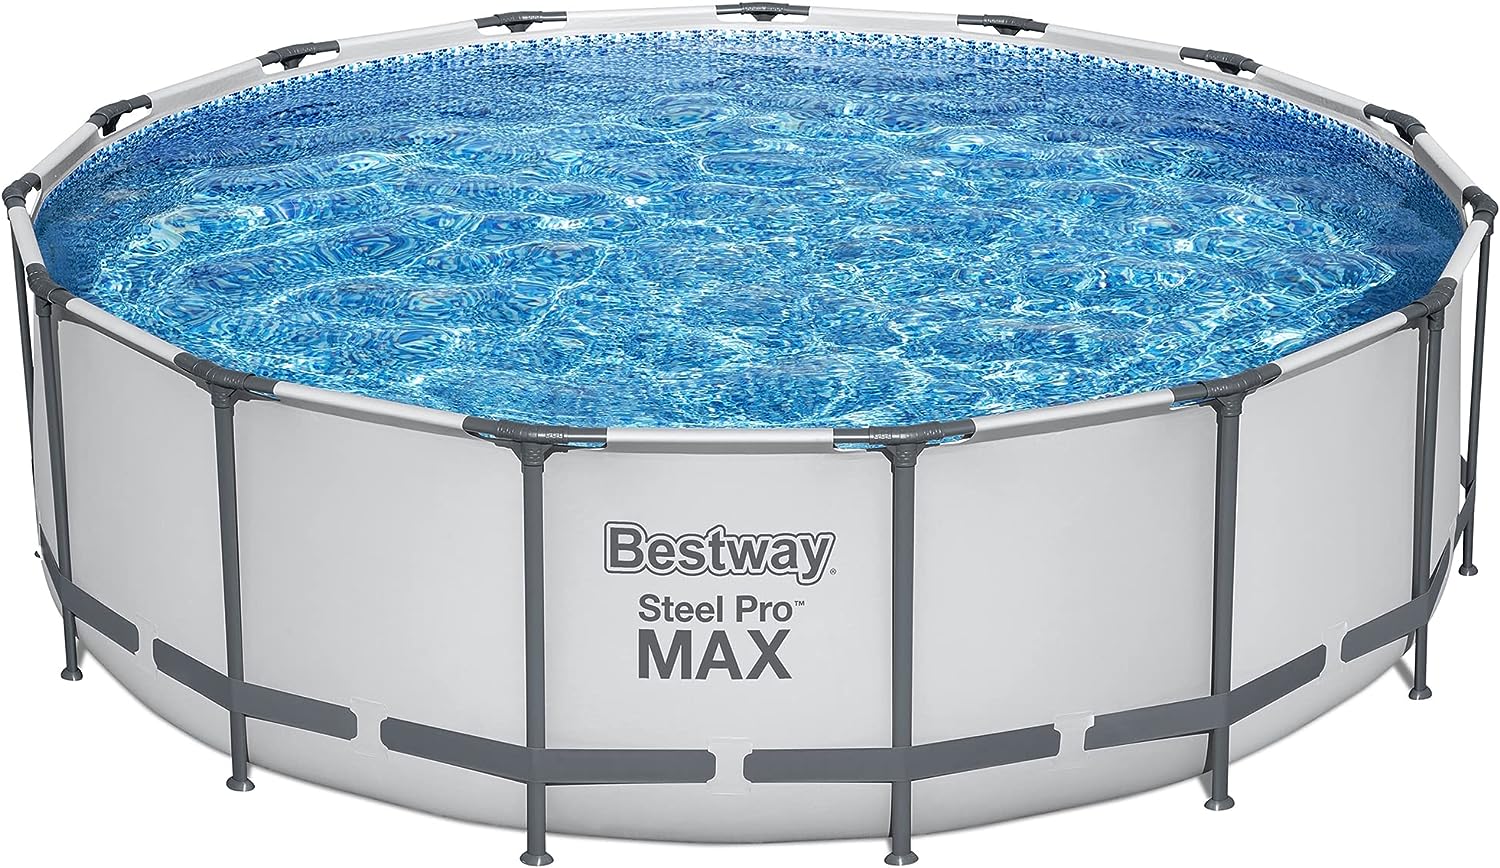 Bestway Steel Pro MAX 15′ Pool Set – Review